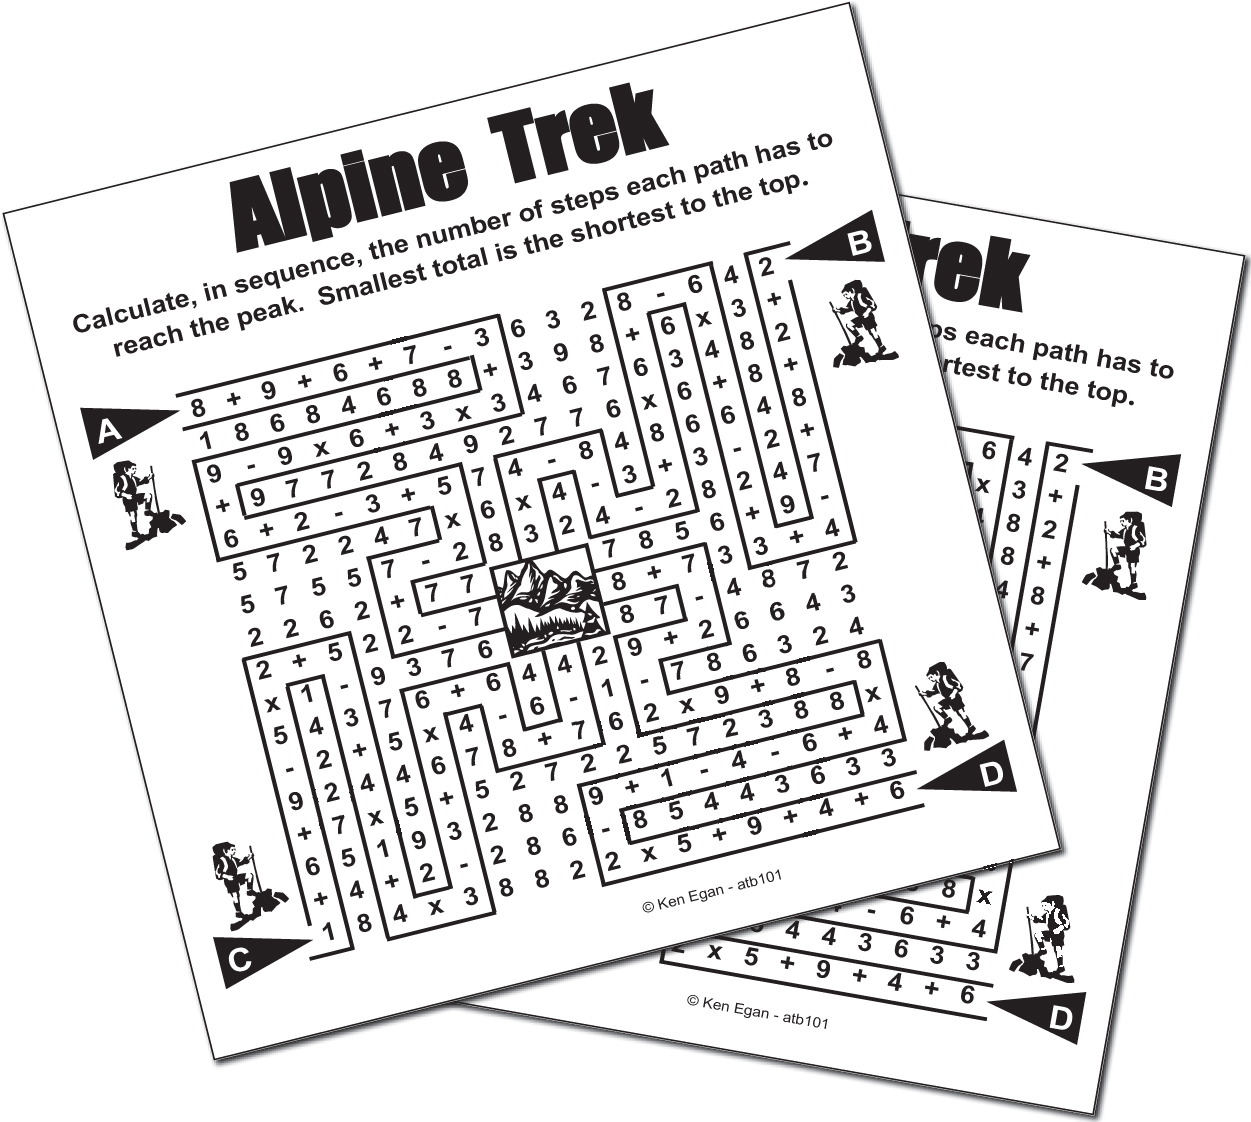 Thumbnail for 20 ALPINE TREK PUZZLE BOOKLET 01